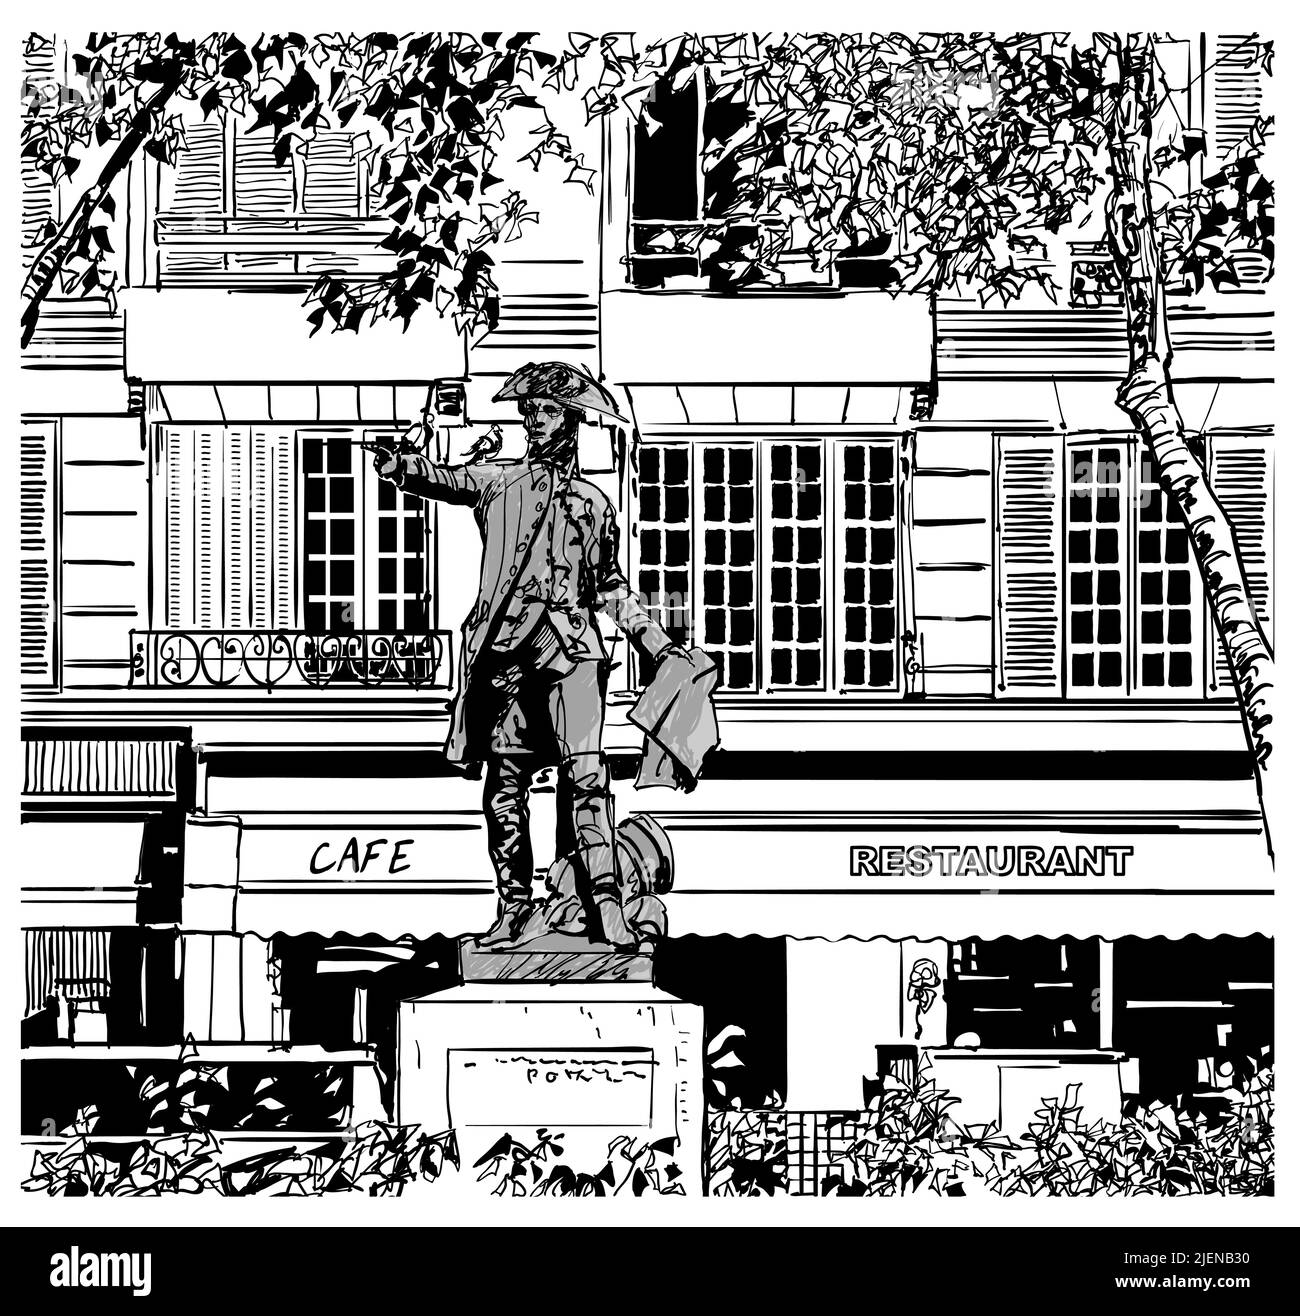 Francia, Parigi Piazza Rochambeau - illustrazione vettoriale (ideale per la stampa su tessuto o carta, poster o carta da parati, decorazione di casa) Illustrazione Vettoriale